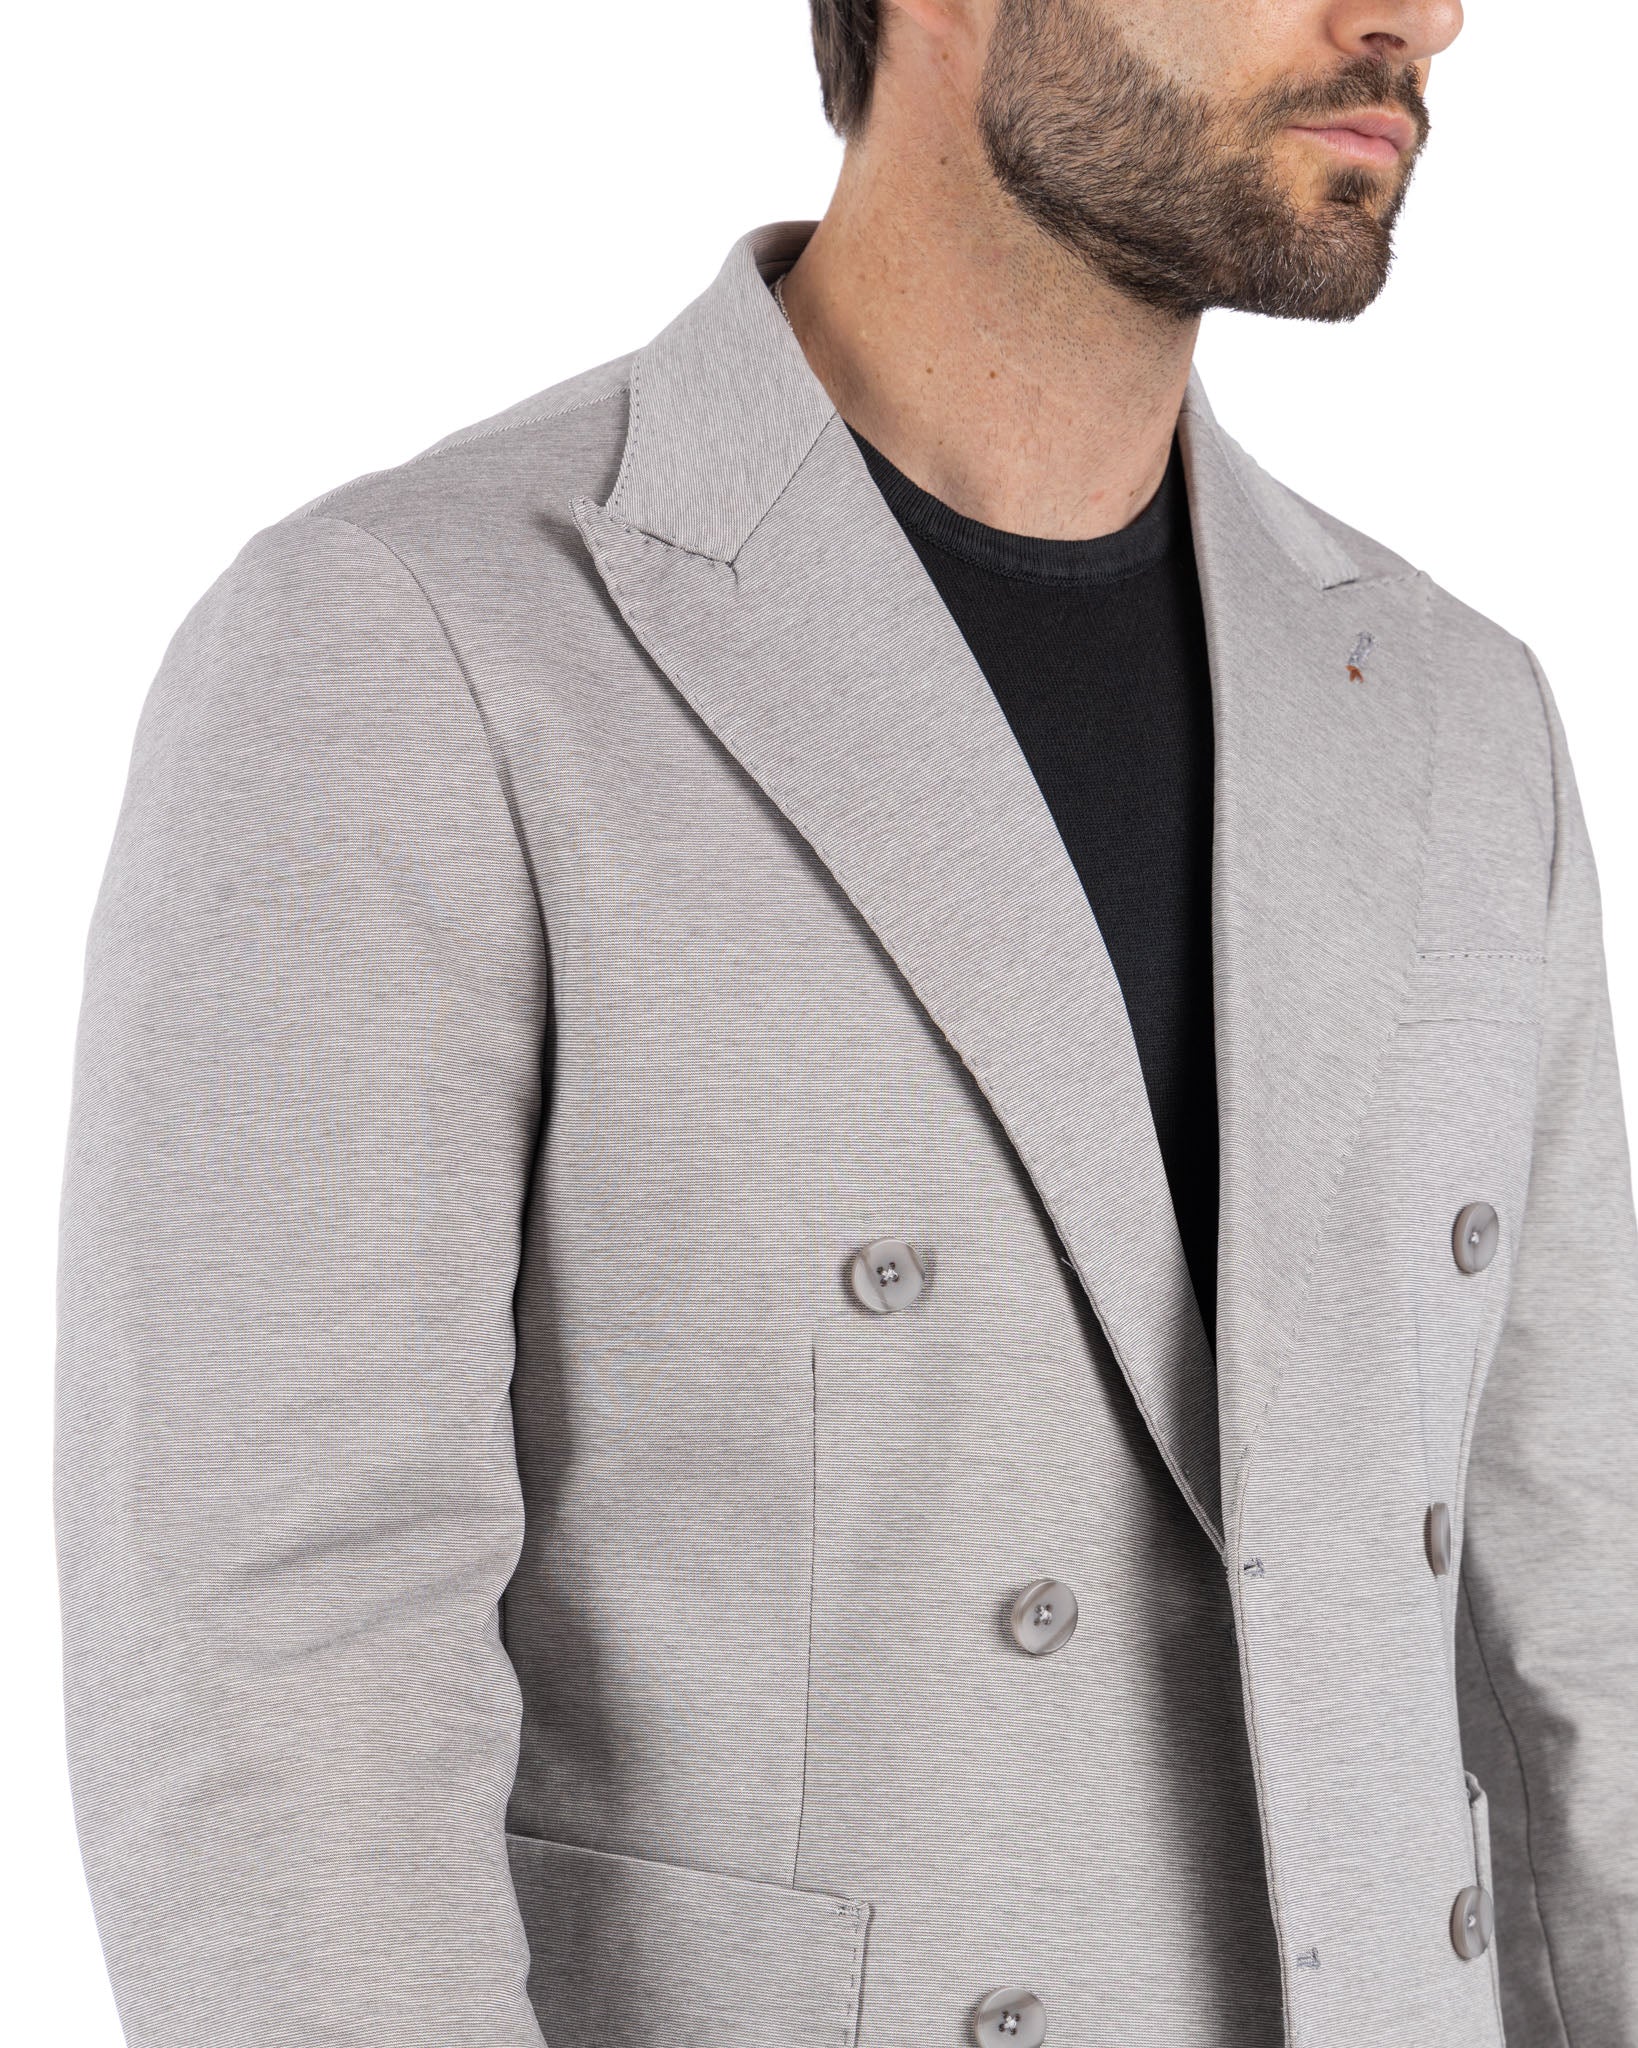 Ostuni - giacca doppiopetto grigio